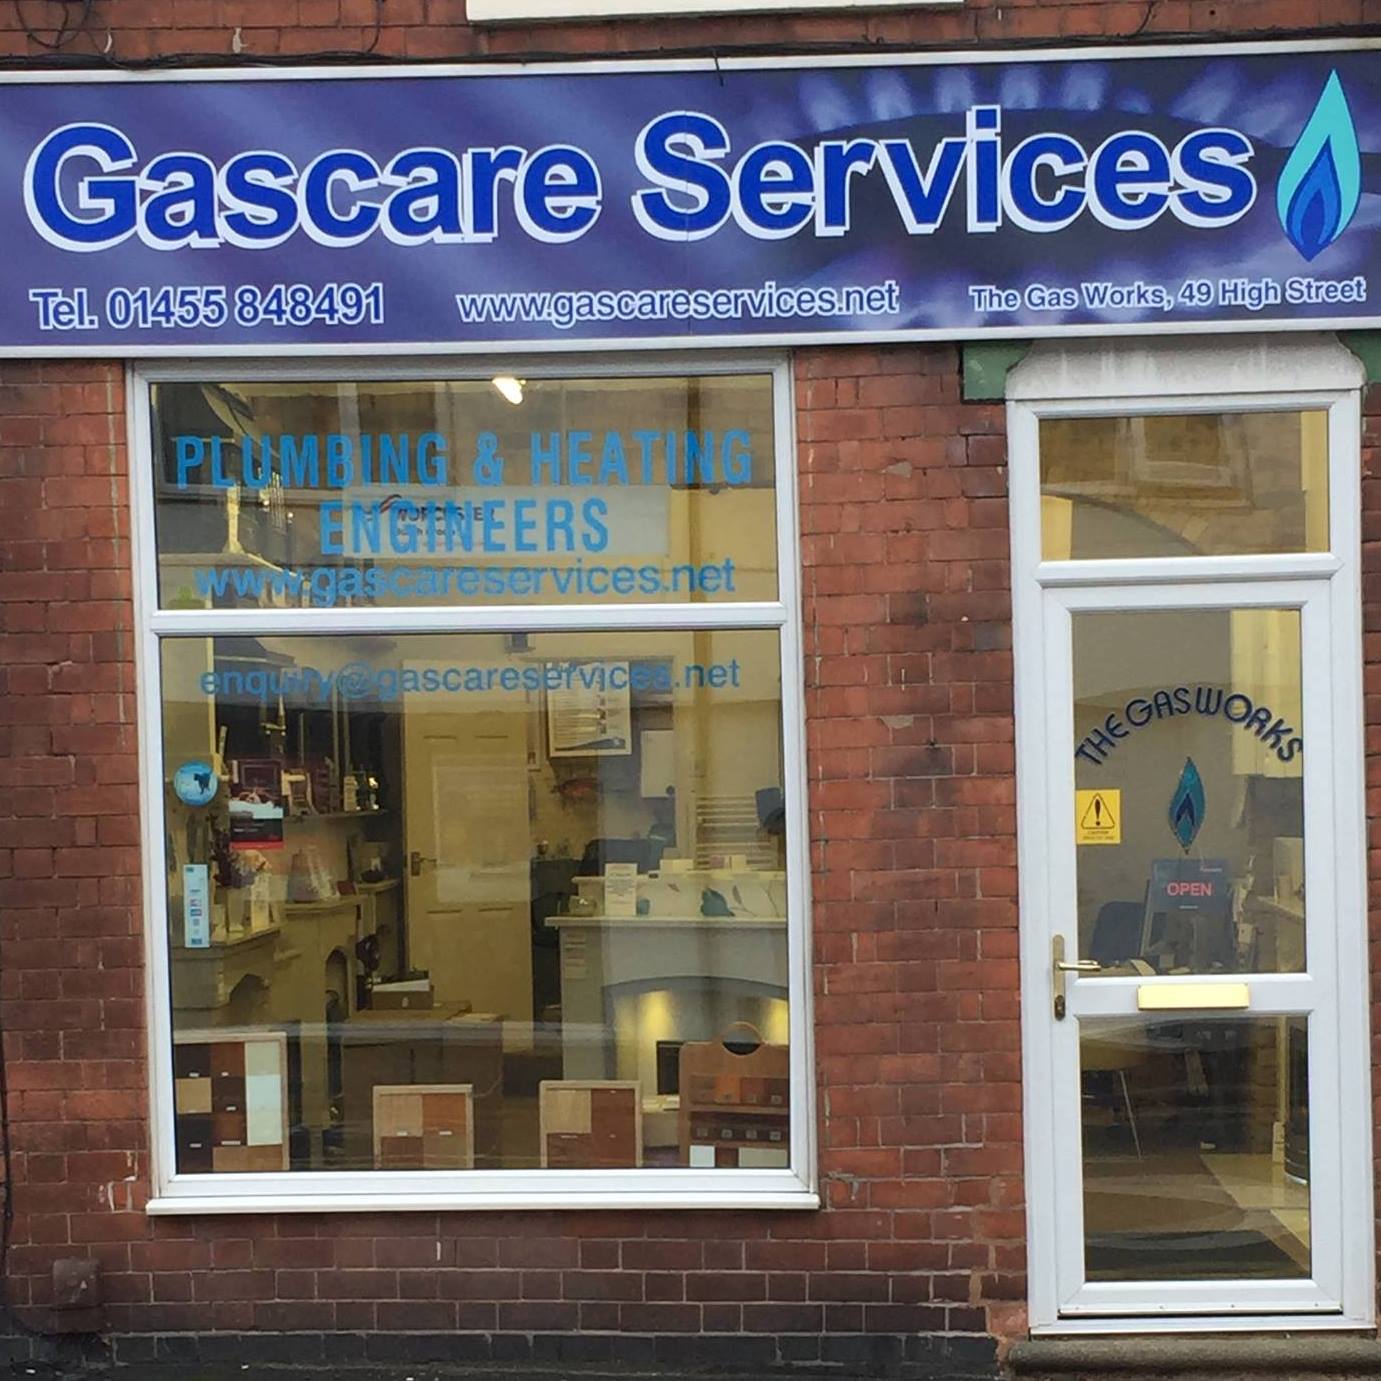 GasCare Services Ltd